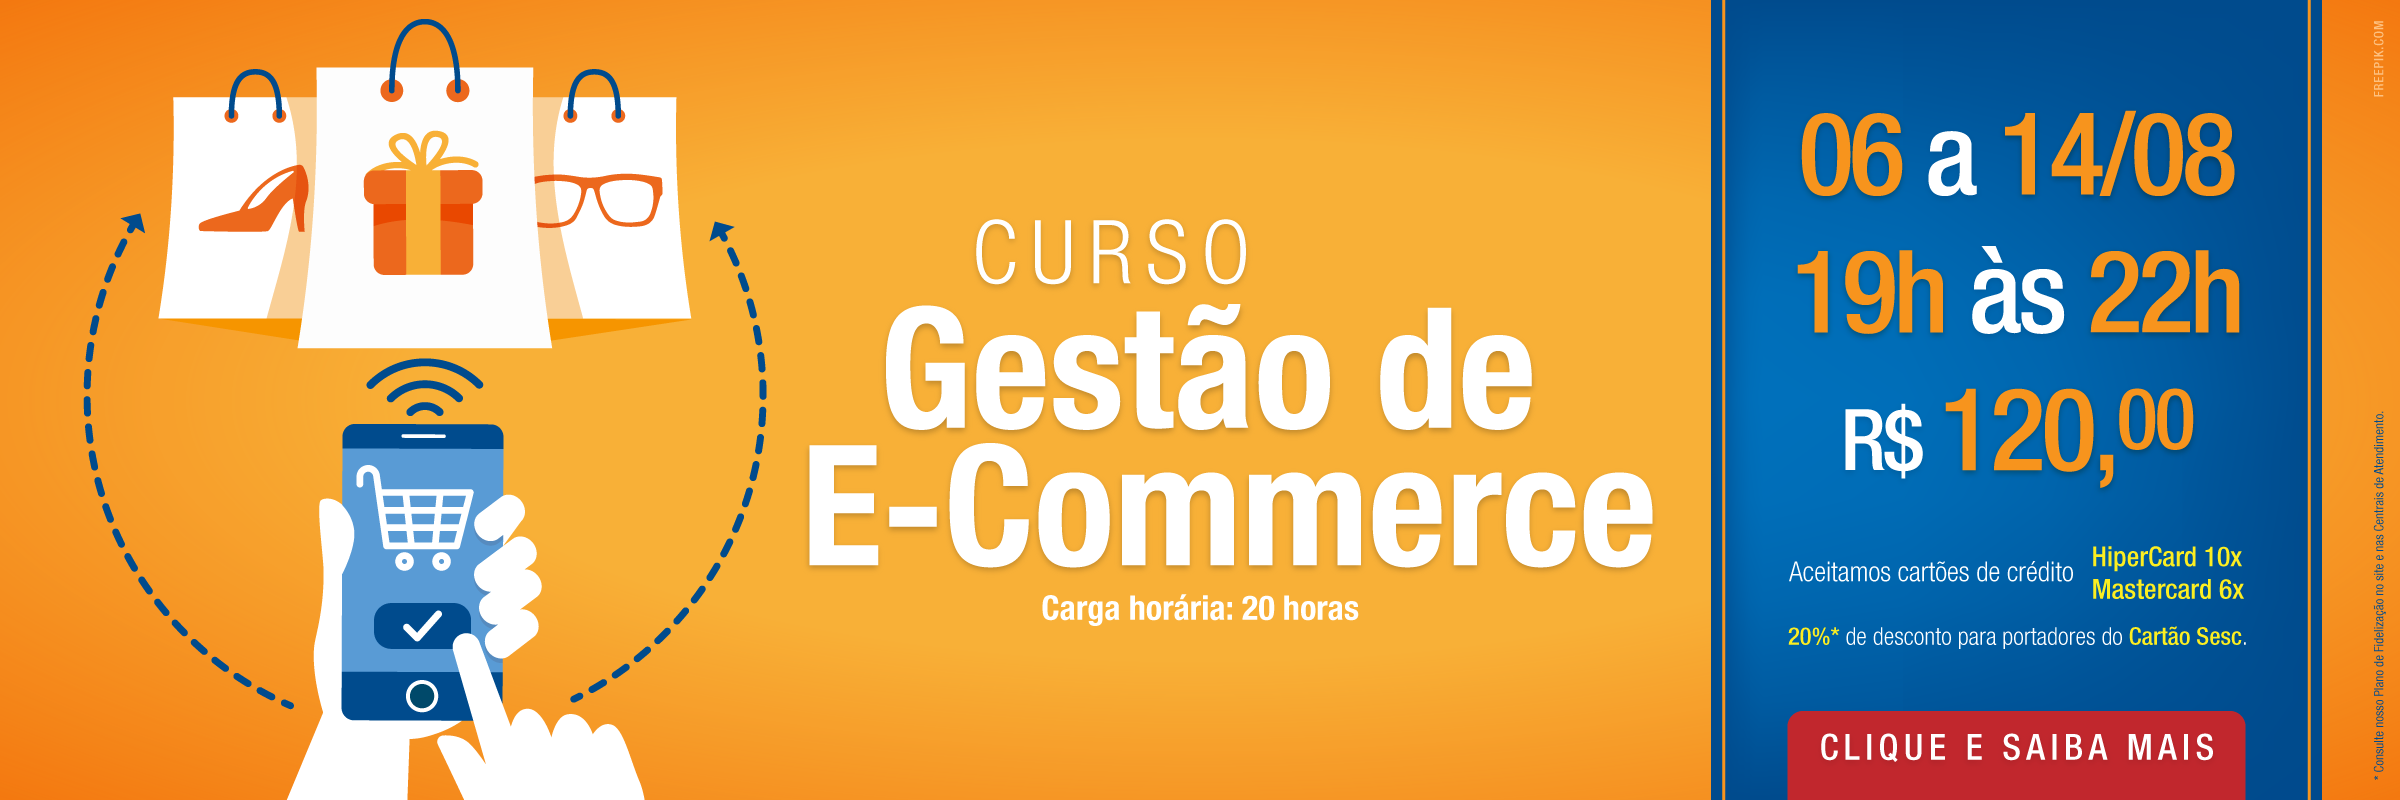 Senac lança curso Gestão de E-Commerce